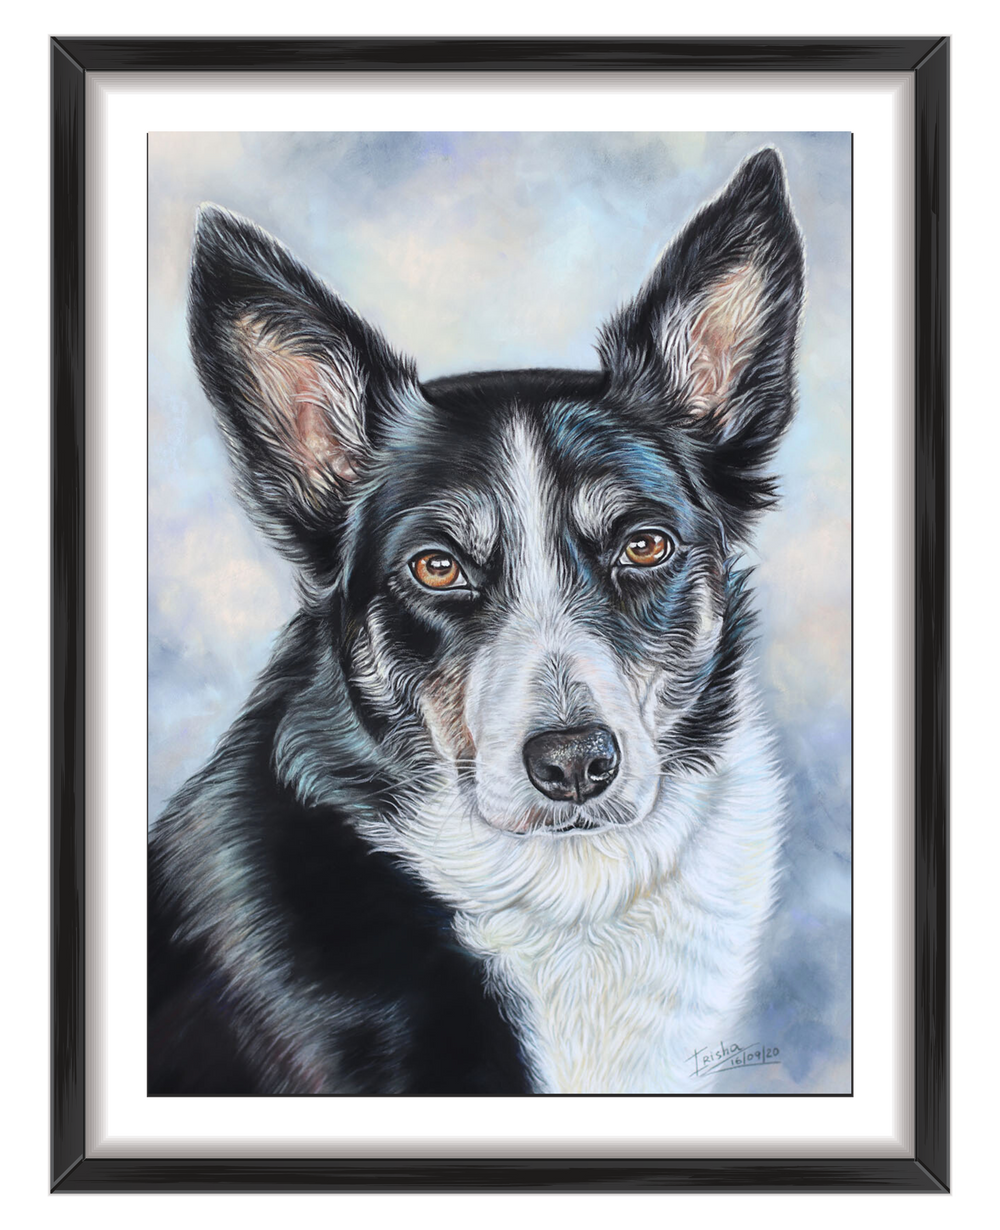 dog portrait commission